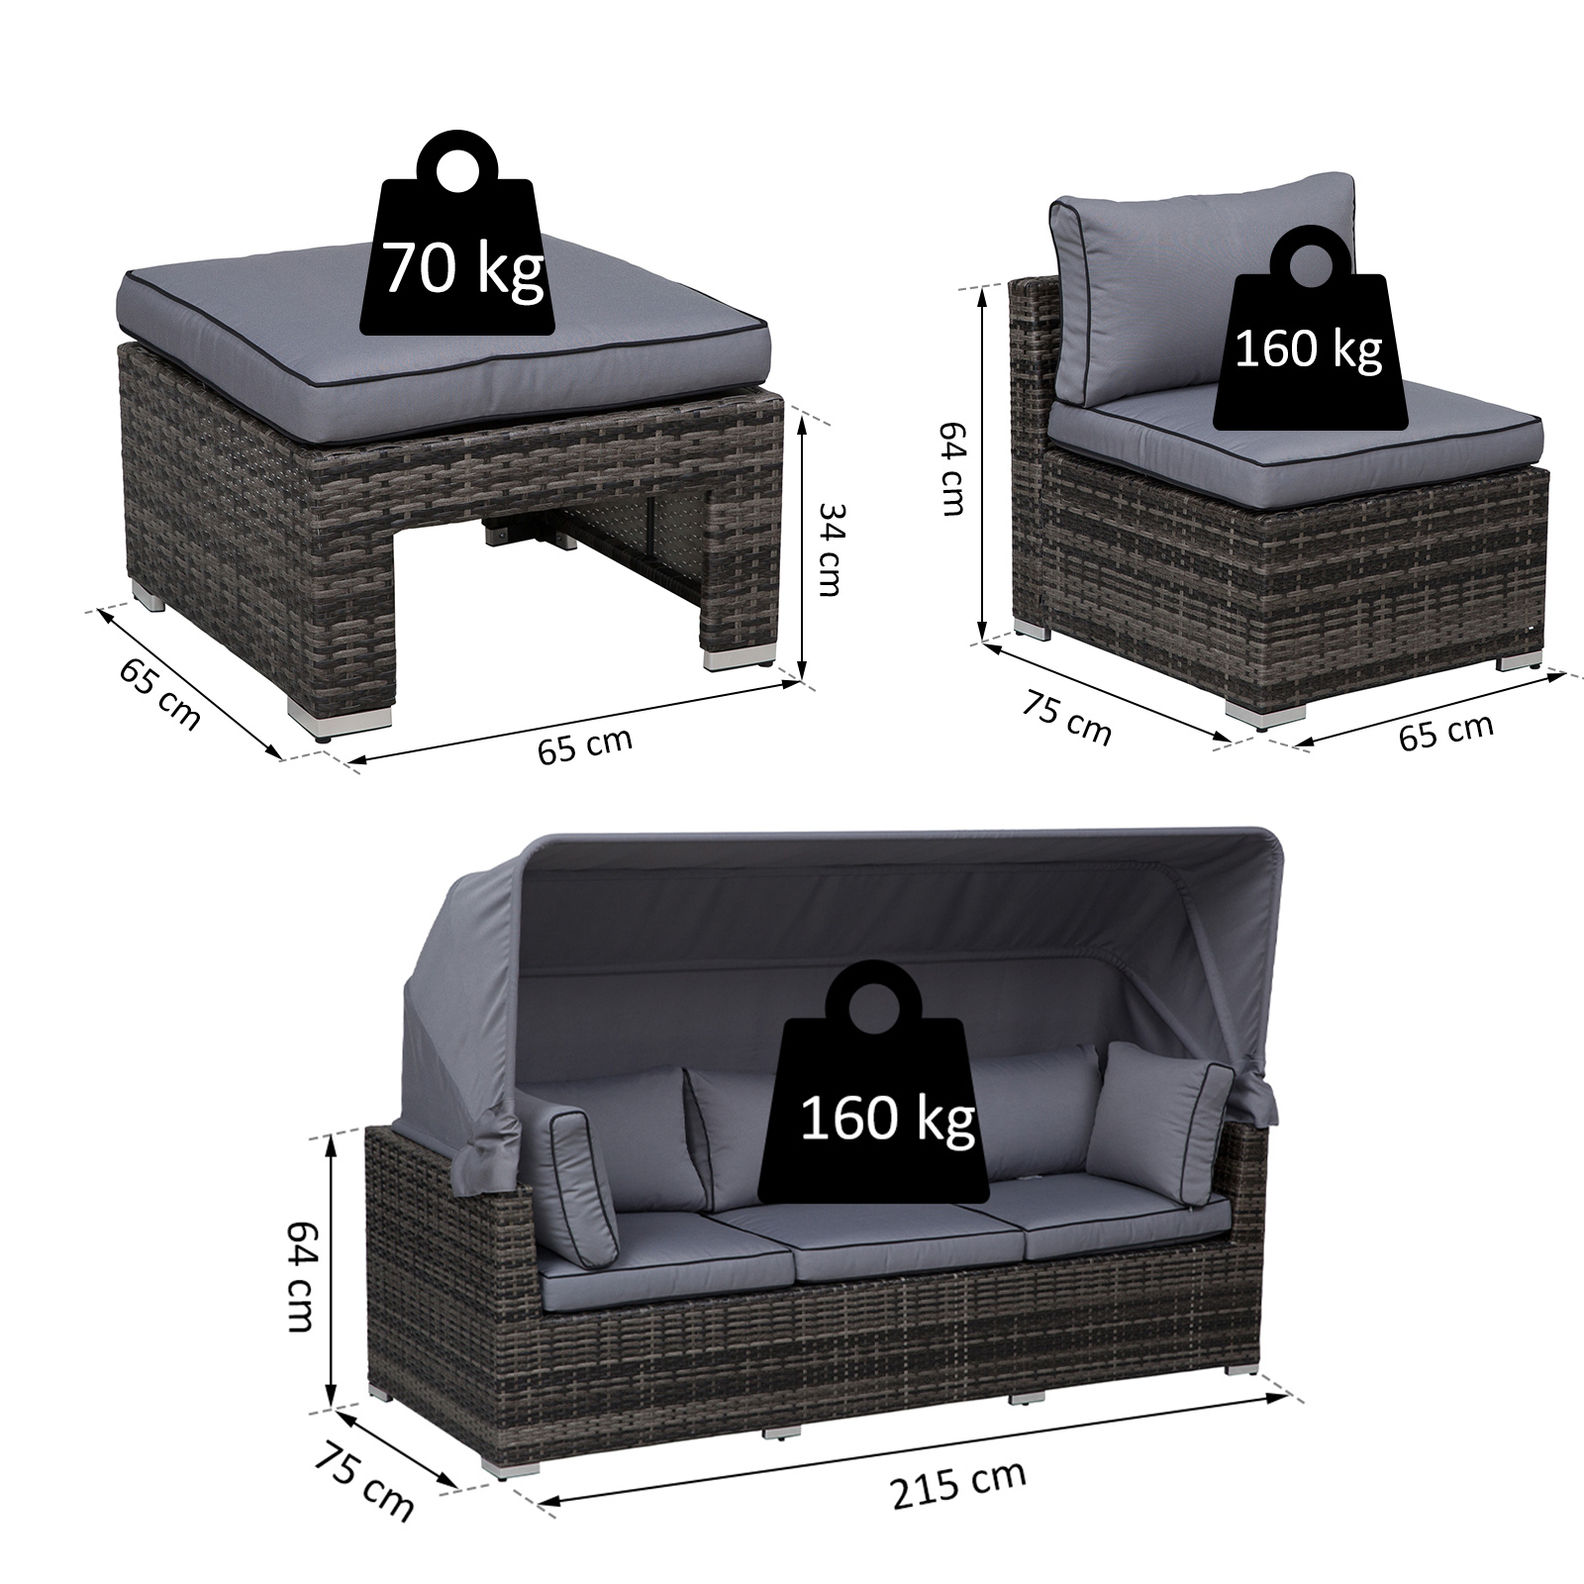 Polyrattan Lounge-Set mit Sonnendach, Kissen und Beistelltisch | Weltbild.de